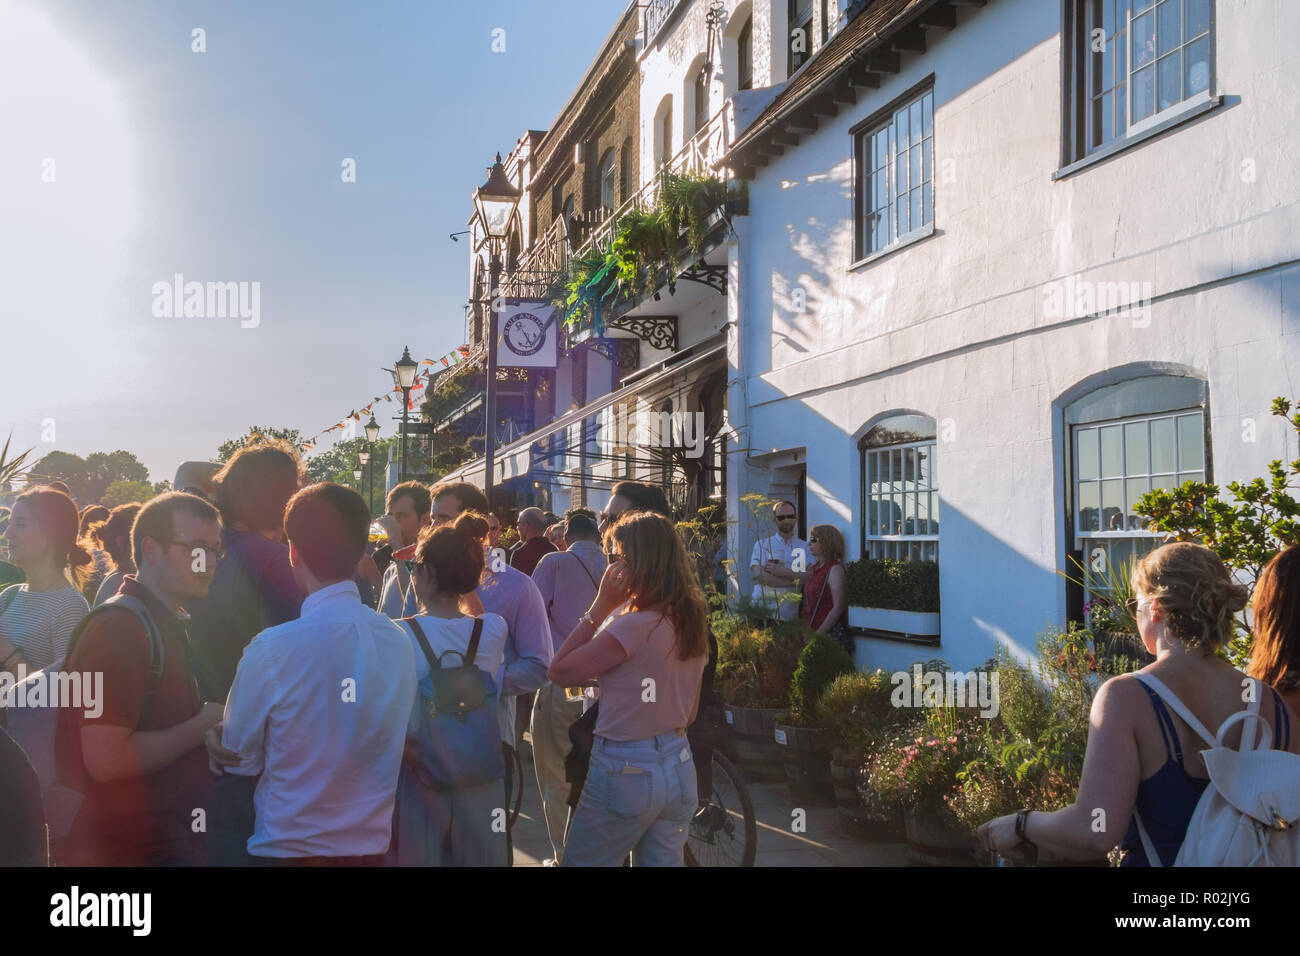 LONDON, ENGLAND - 29. JUNI 2018: Leute genießen Getränke und am späten Abend Sommer Sonnenschein außerhalb des Blauen Anchor Pub auf der Themse Riverside. Stockfoto